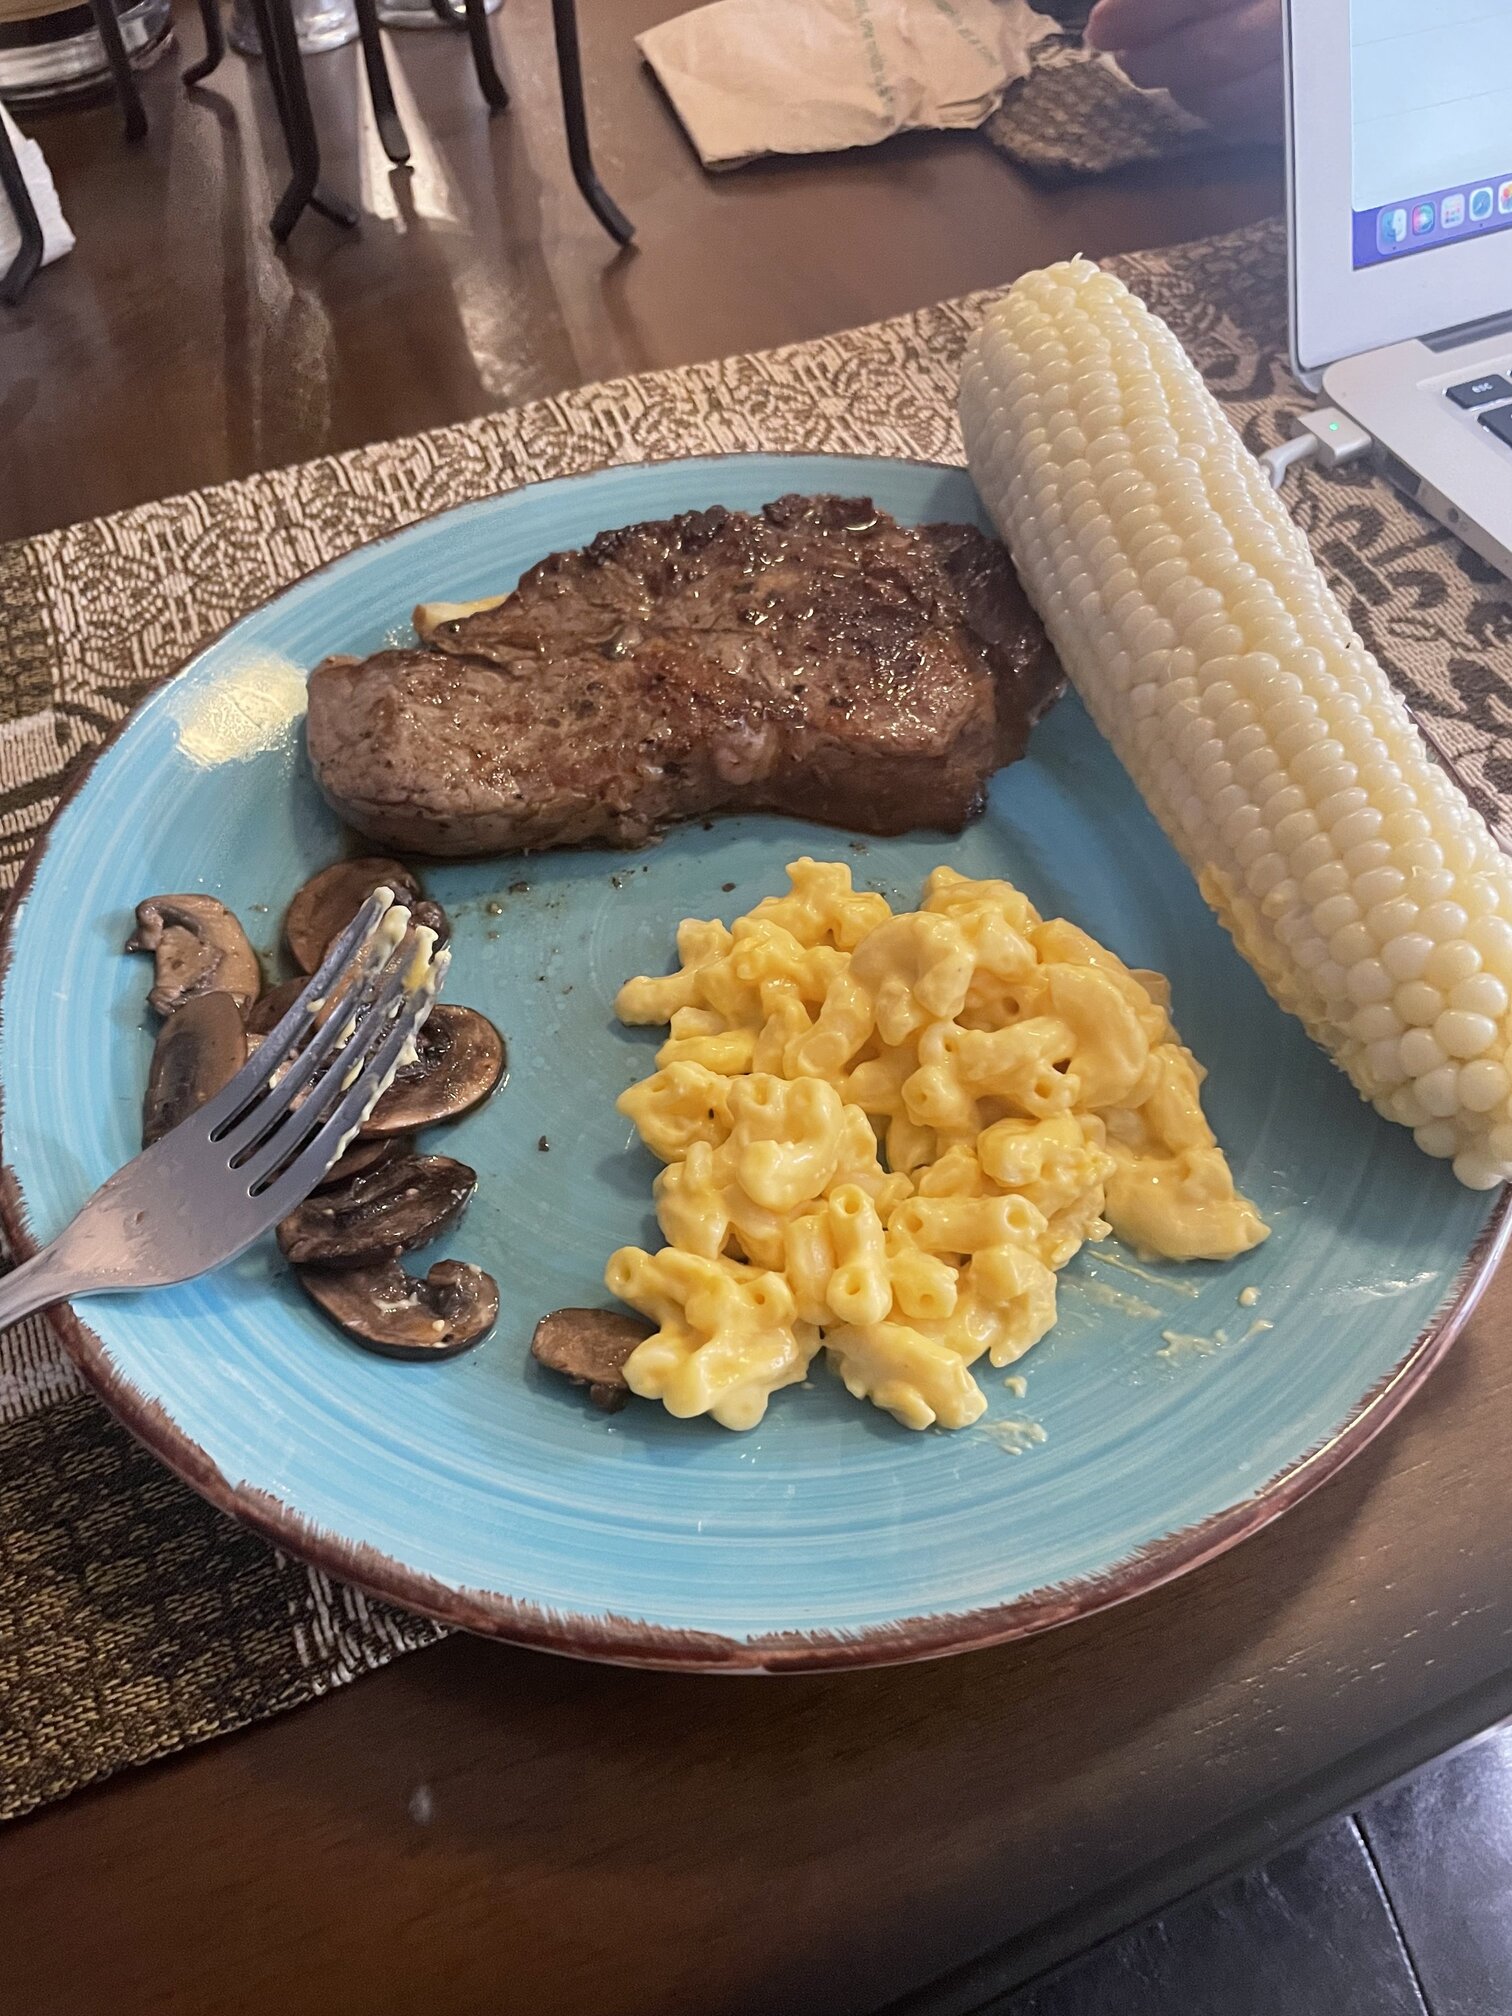 Strip steak, Mac n cheese, mushrooms and corn dinner 2